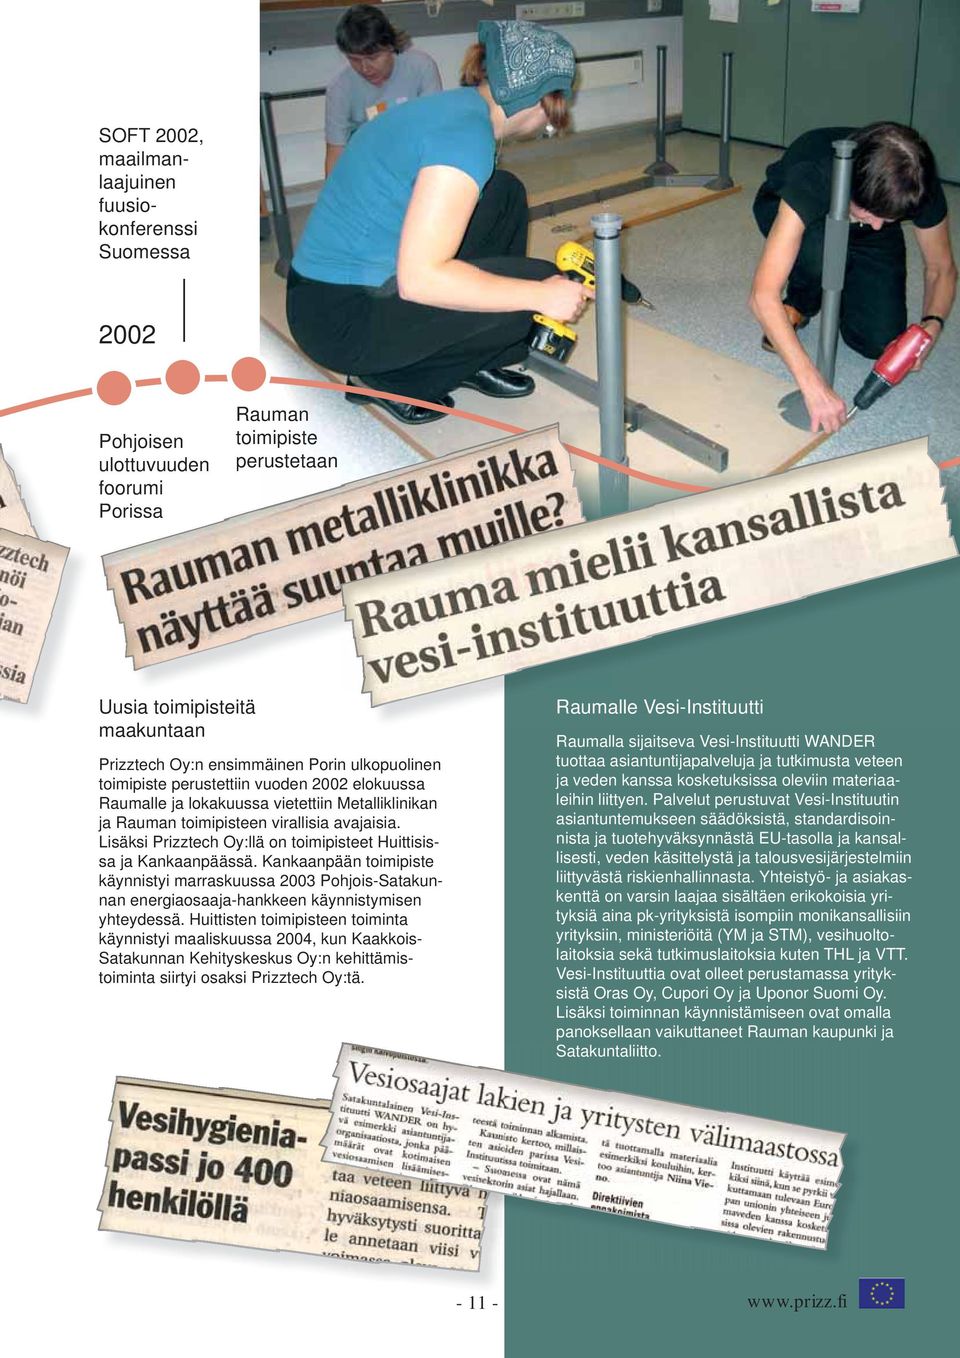 Lisäksi Prizztech Oy:llä on toimipisteet Huittisissa ja Kankaanpäässä. Kankaanpään toimipiste käynnistyi marraskuussa 2003 Pohjois-Satakunnan energiaosaaja-hankkeen käynnistymisen yhteydessä.